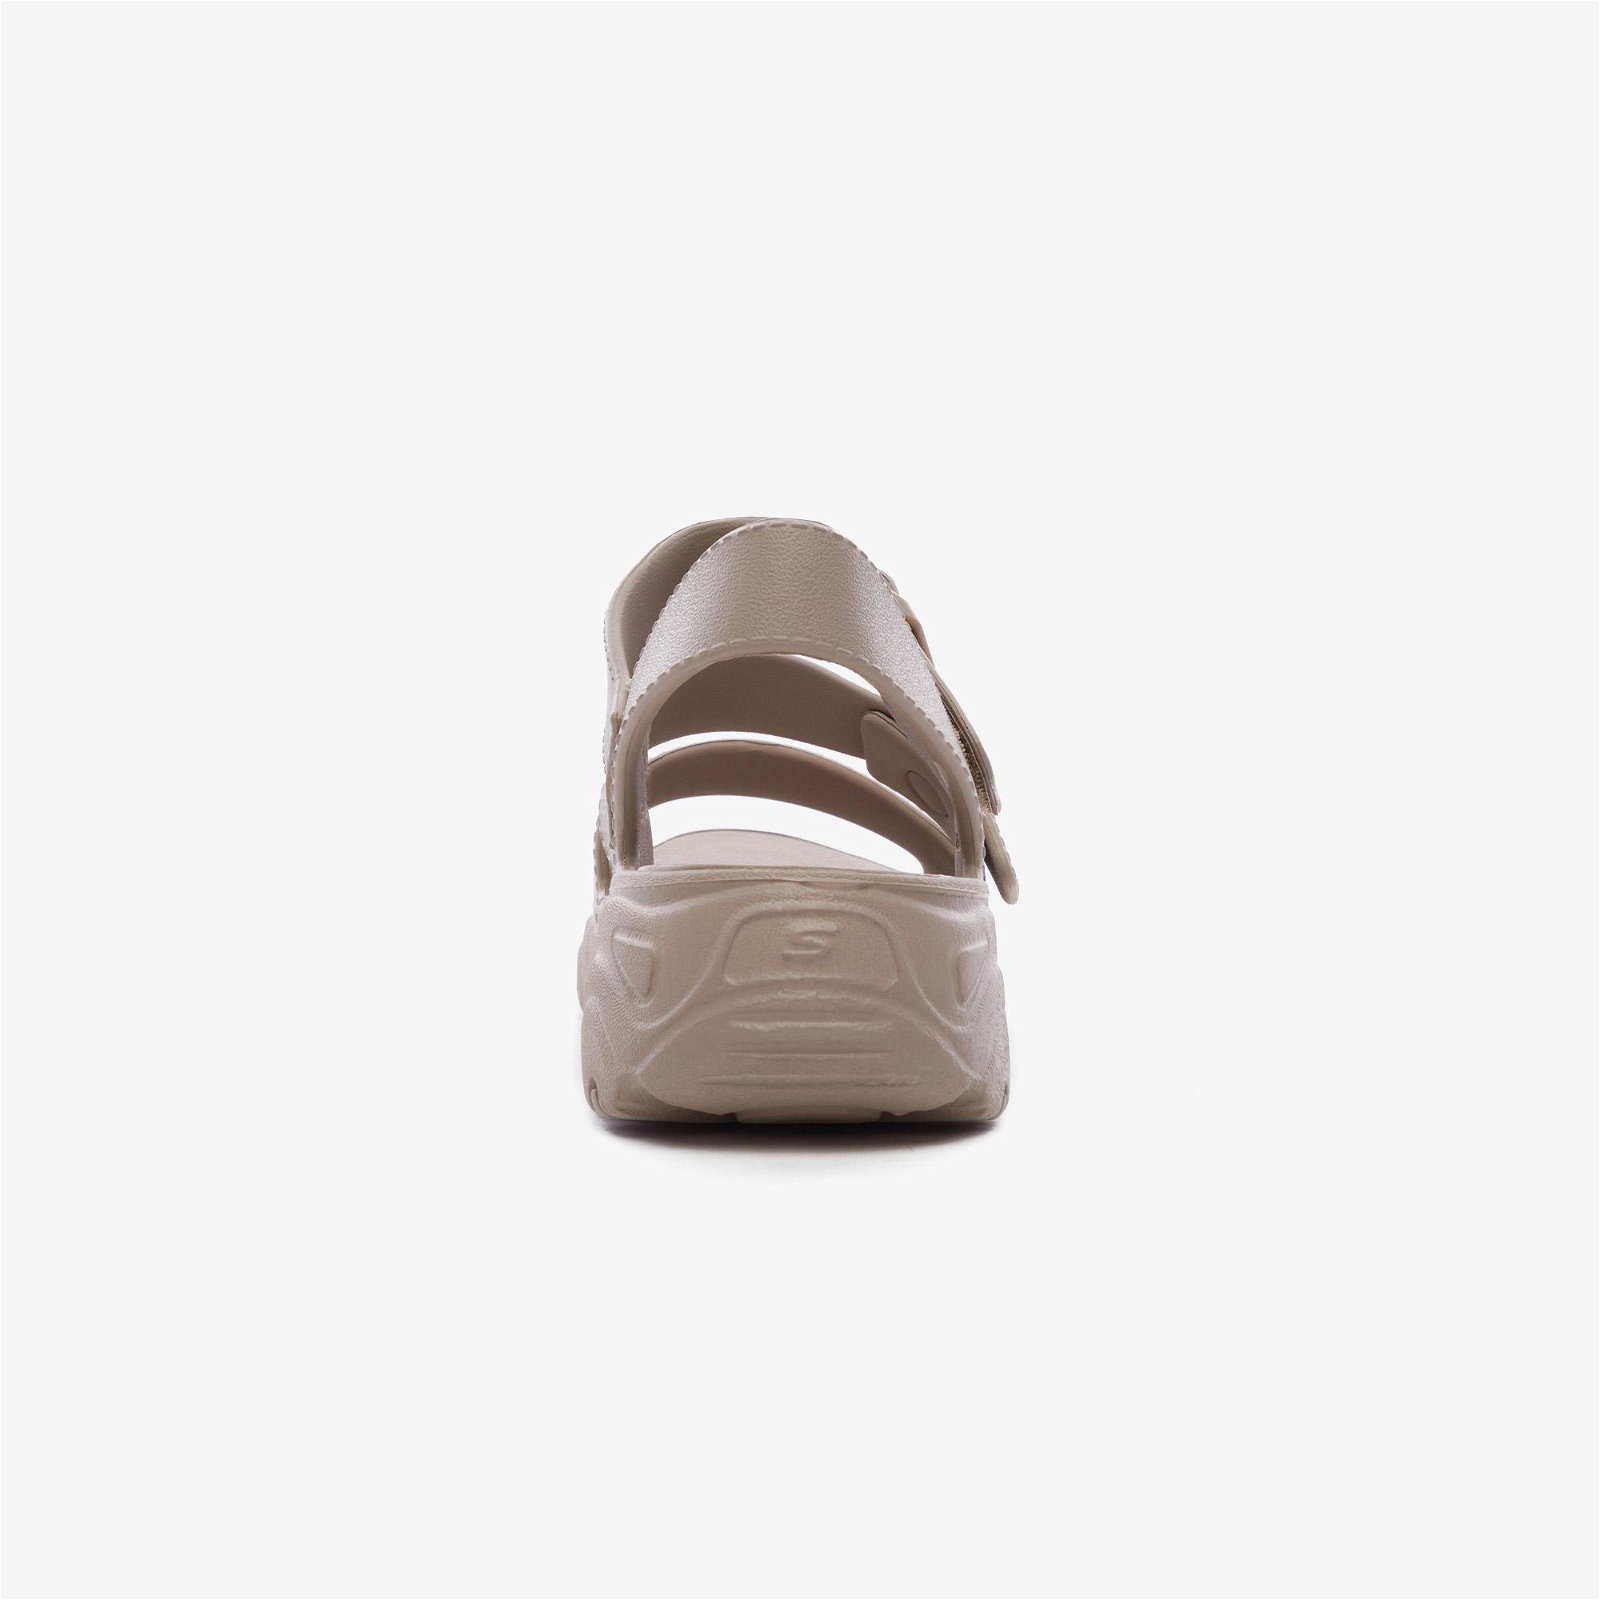 Skechers D'Lites 2.0 Kadın Bej Sandalet